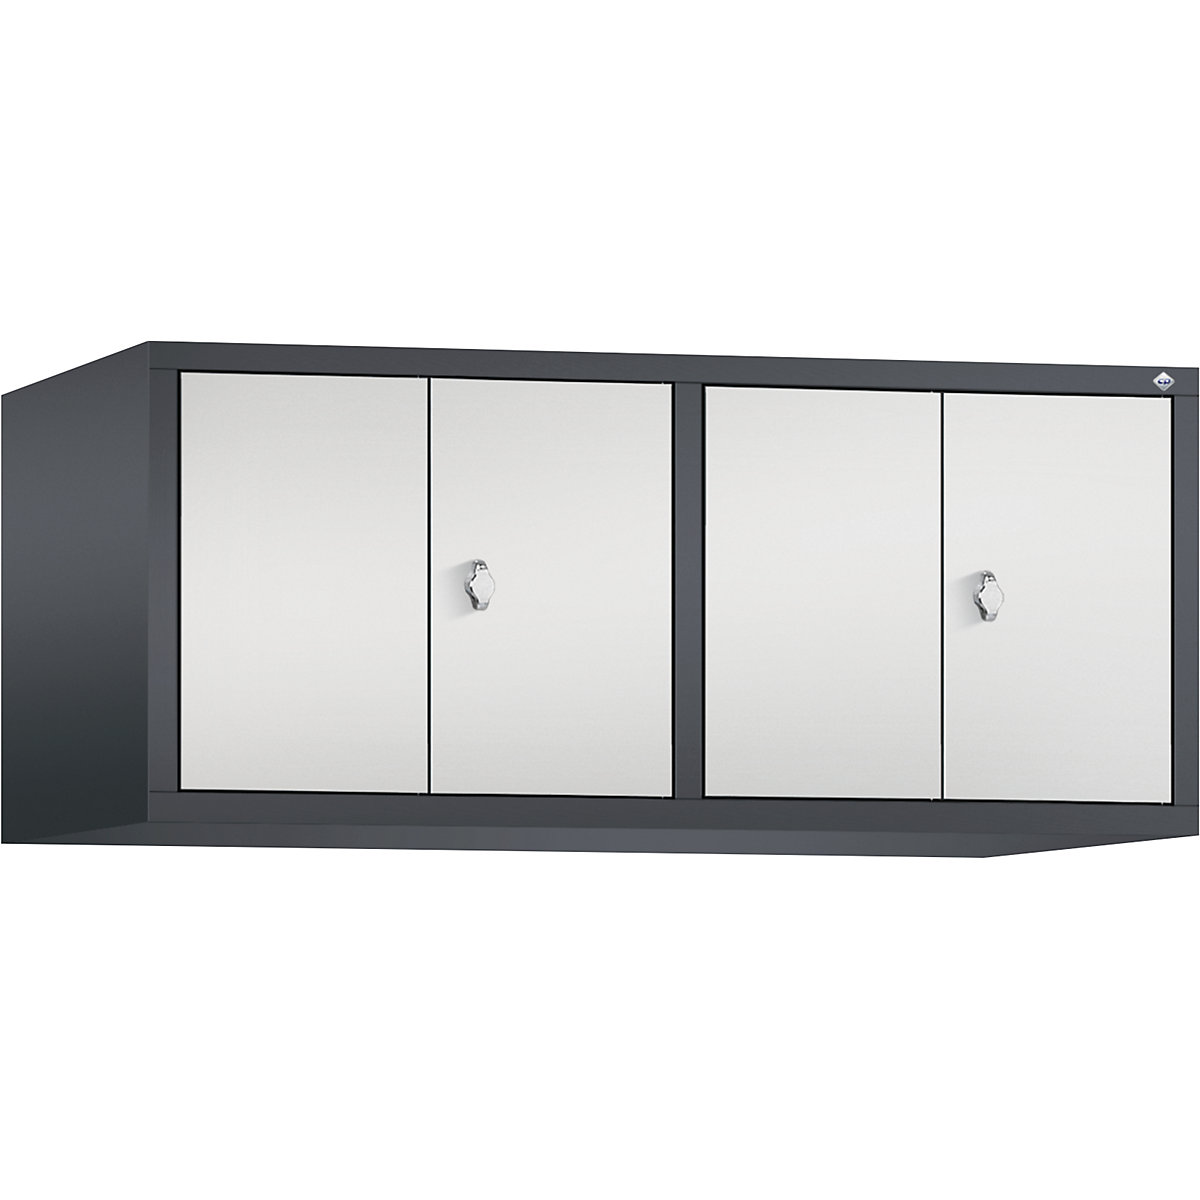 Altillo CLASSIC, puertas batientes que cierran al ras entre sí – C+P, 4 compartimentos, anchura de compartimento 300 mm, gris negruzco / gris luminoso